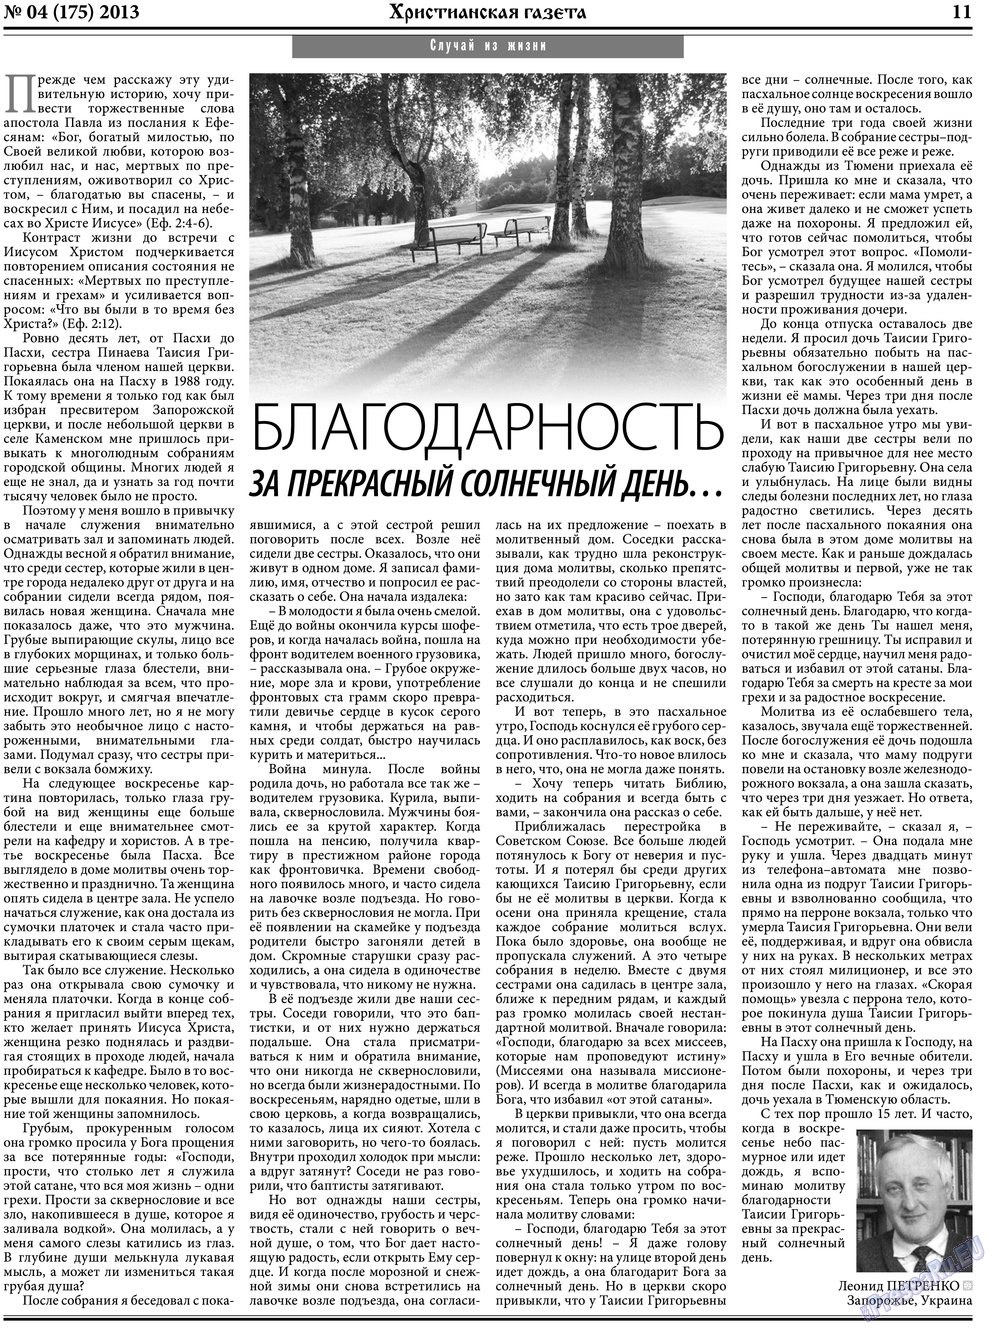 Христианская газета (газета). 2013 год, номер 4, стр. 11